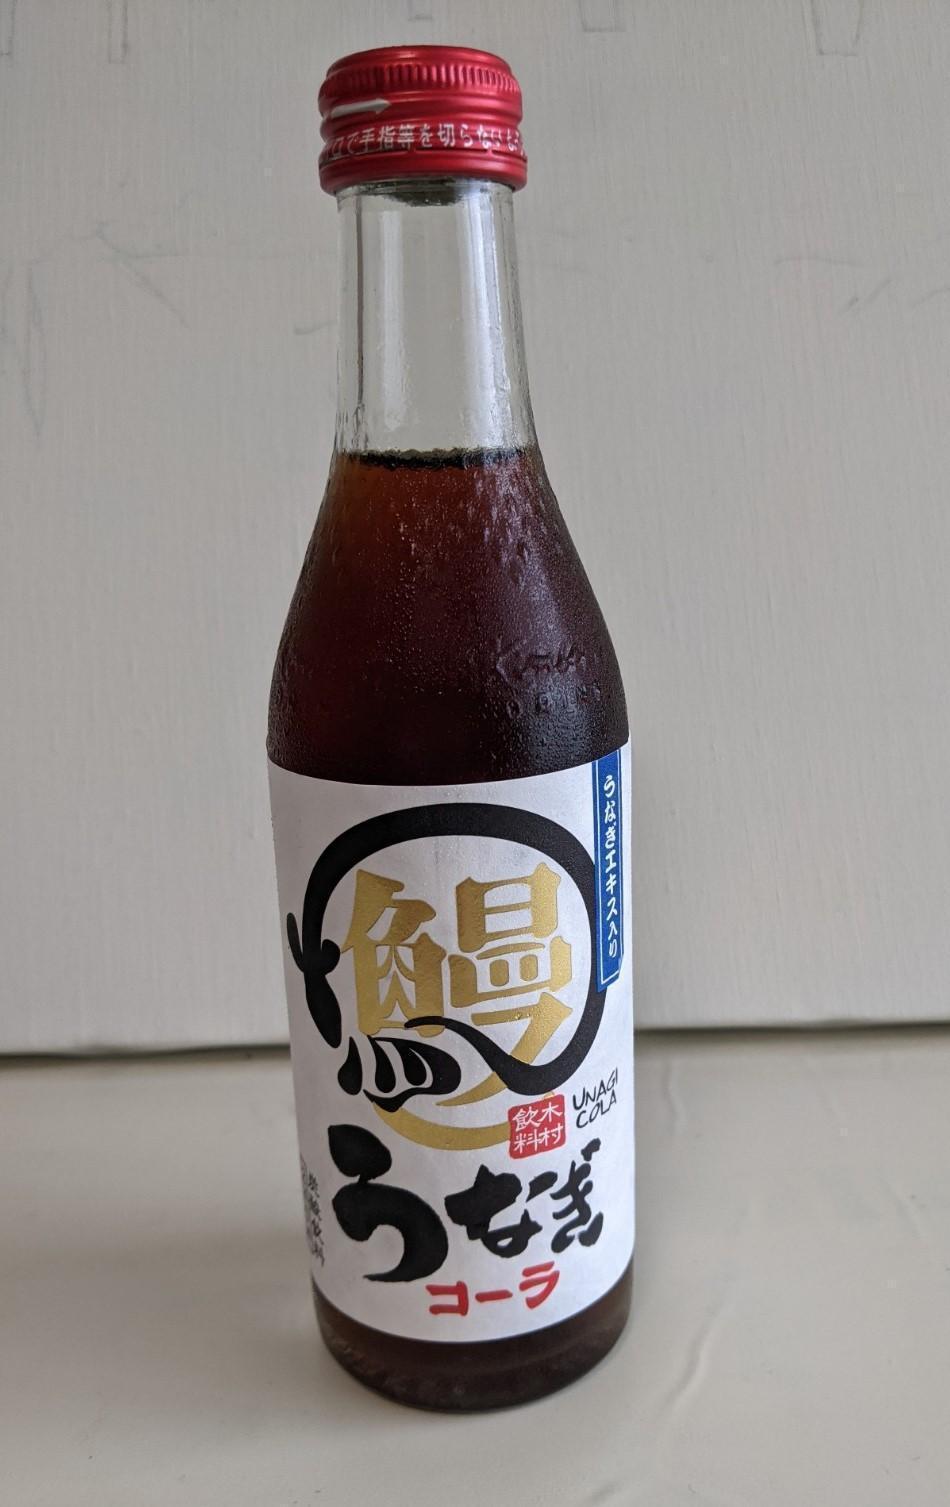 うなぎエキスが入ったコーラ 日本橋の老舗うなぎ店で見つけた「意外な飲み物」